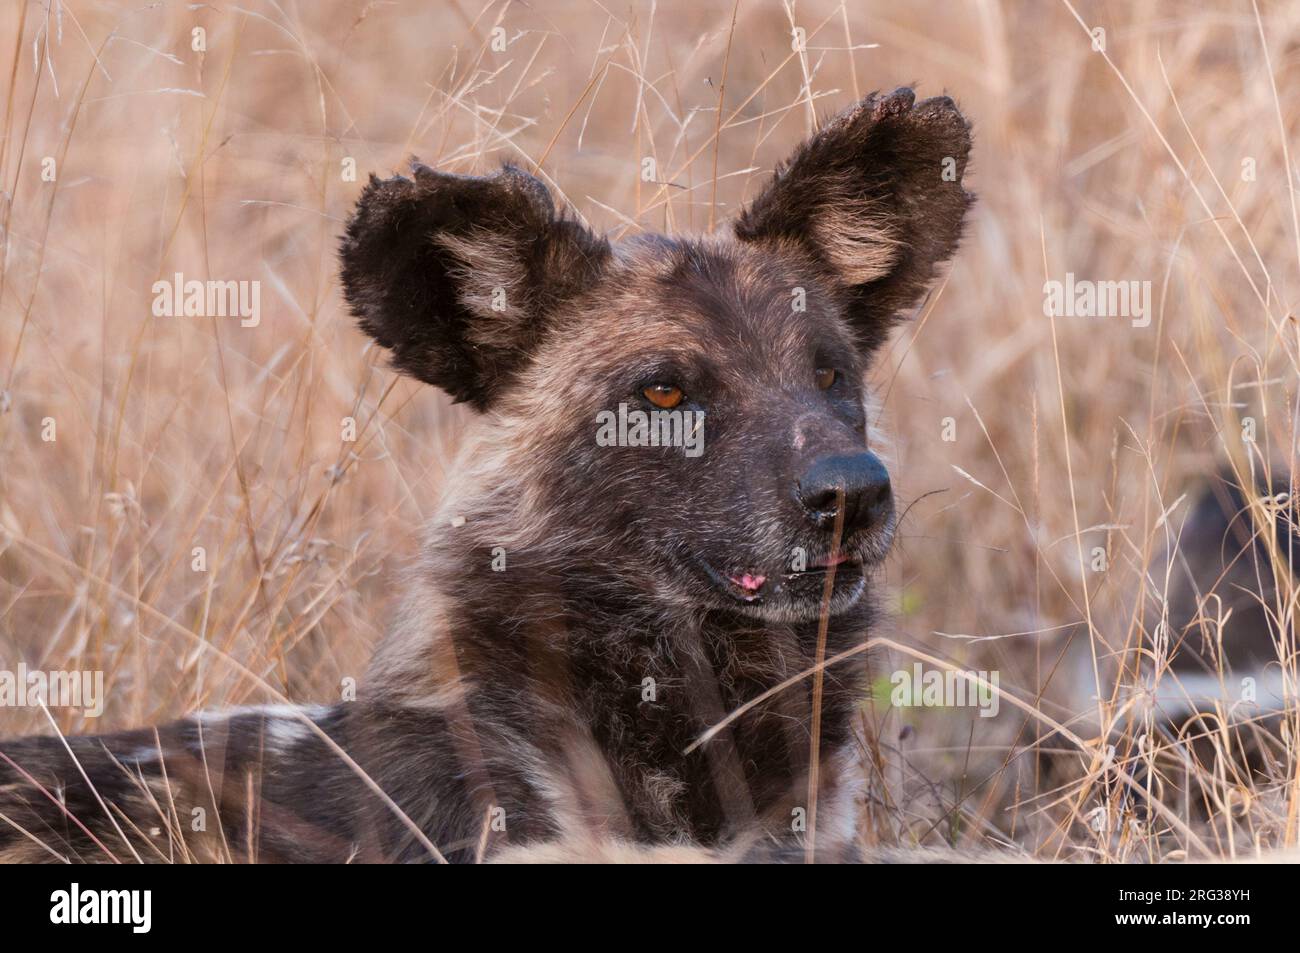 Ritratto di un cane selvatico africano, cane da caccia del Capo, o lupo dipinto, Lycaon pictus. Riserva del gioco di Mala Mala, Sudafrica. Foto Stock